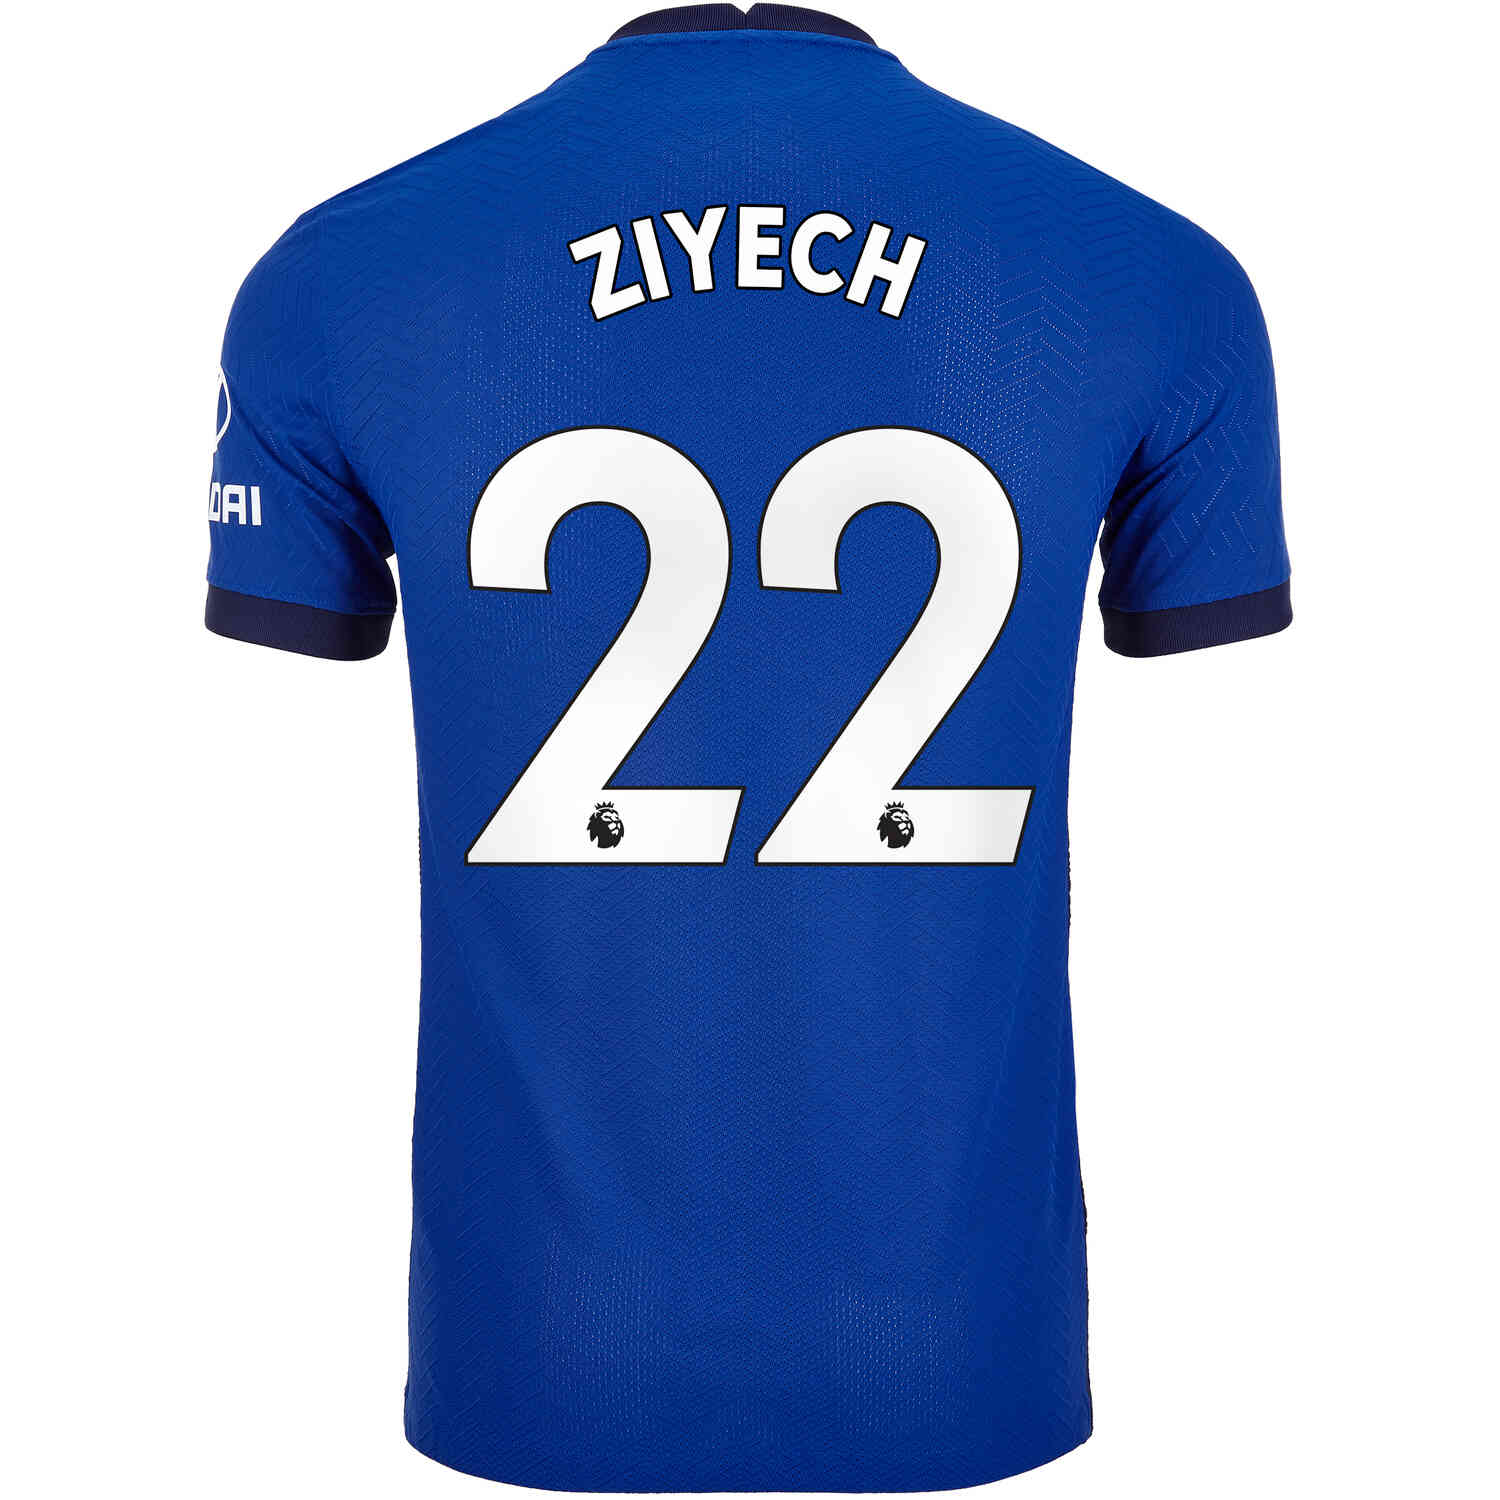 2020/21 Hakim Ziyech Chelsea Home Match Jersey - Soccer Master